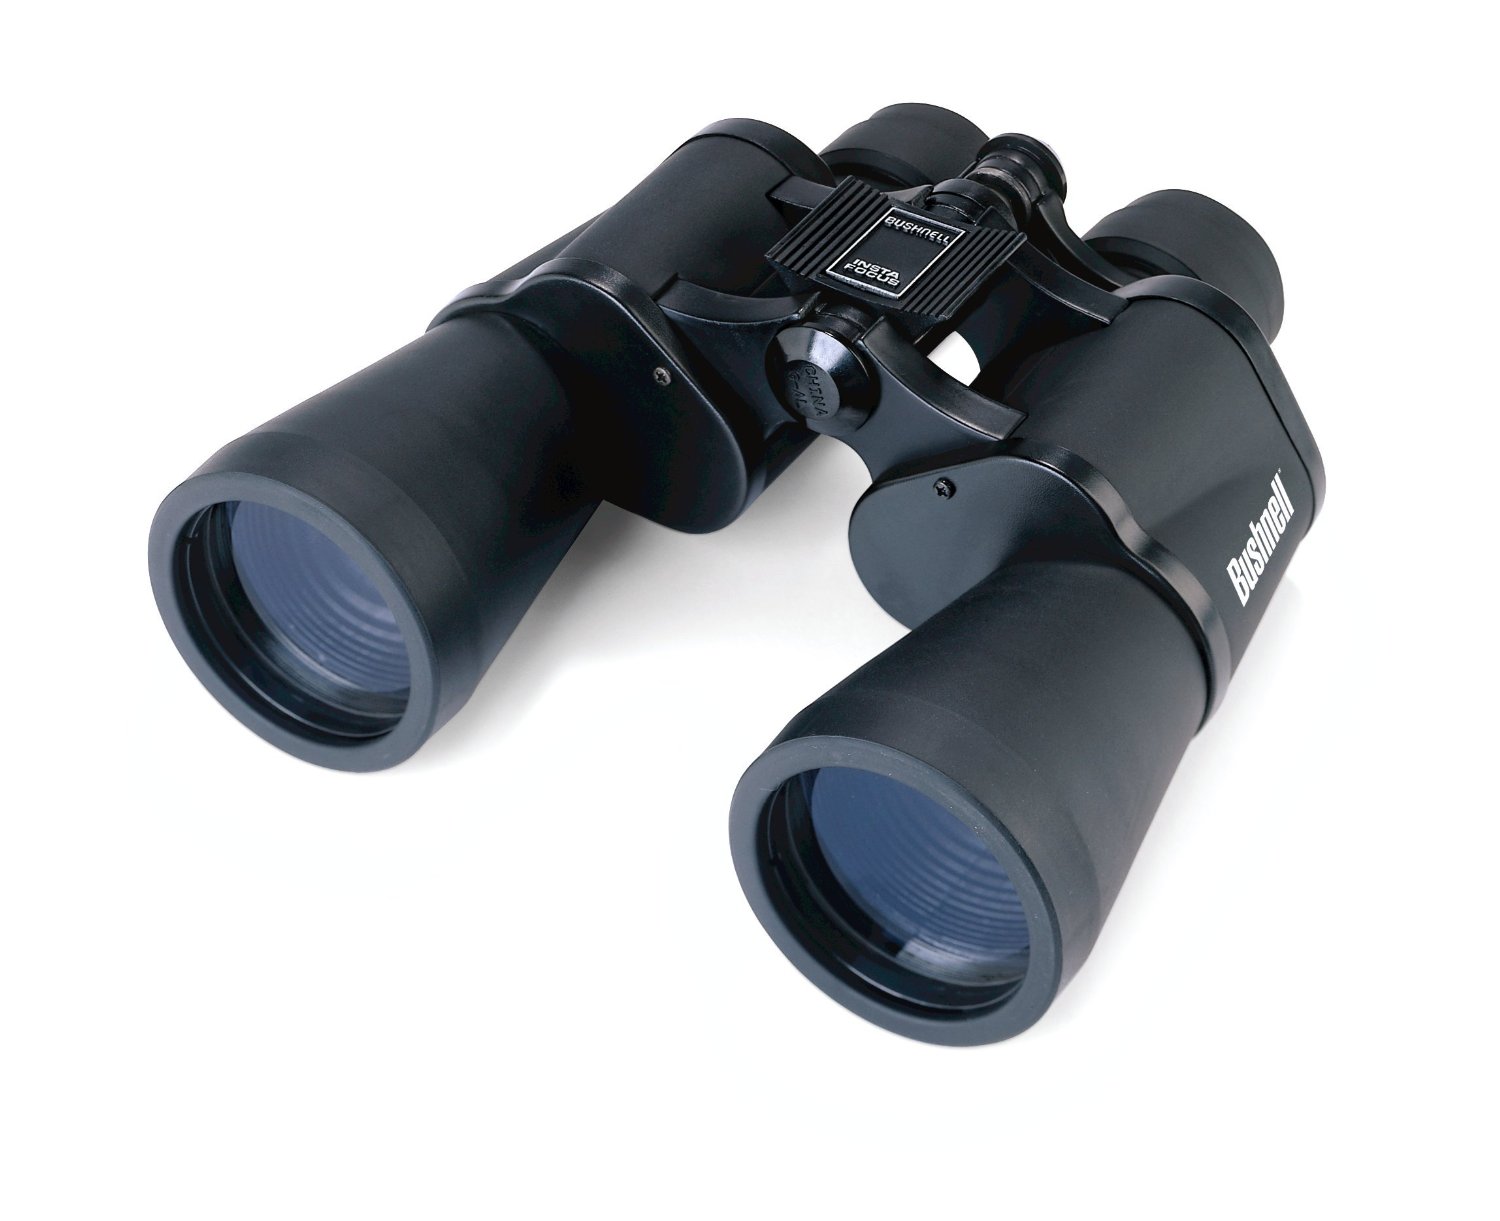 Best Binoculars Read our detailed Binocular Reviews